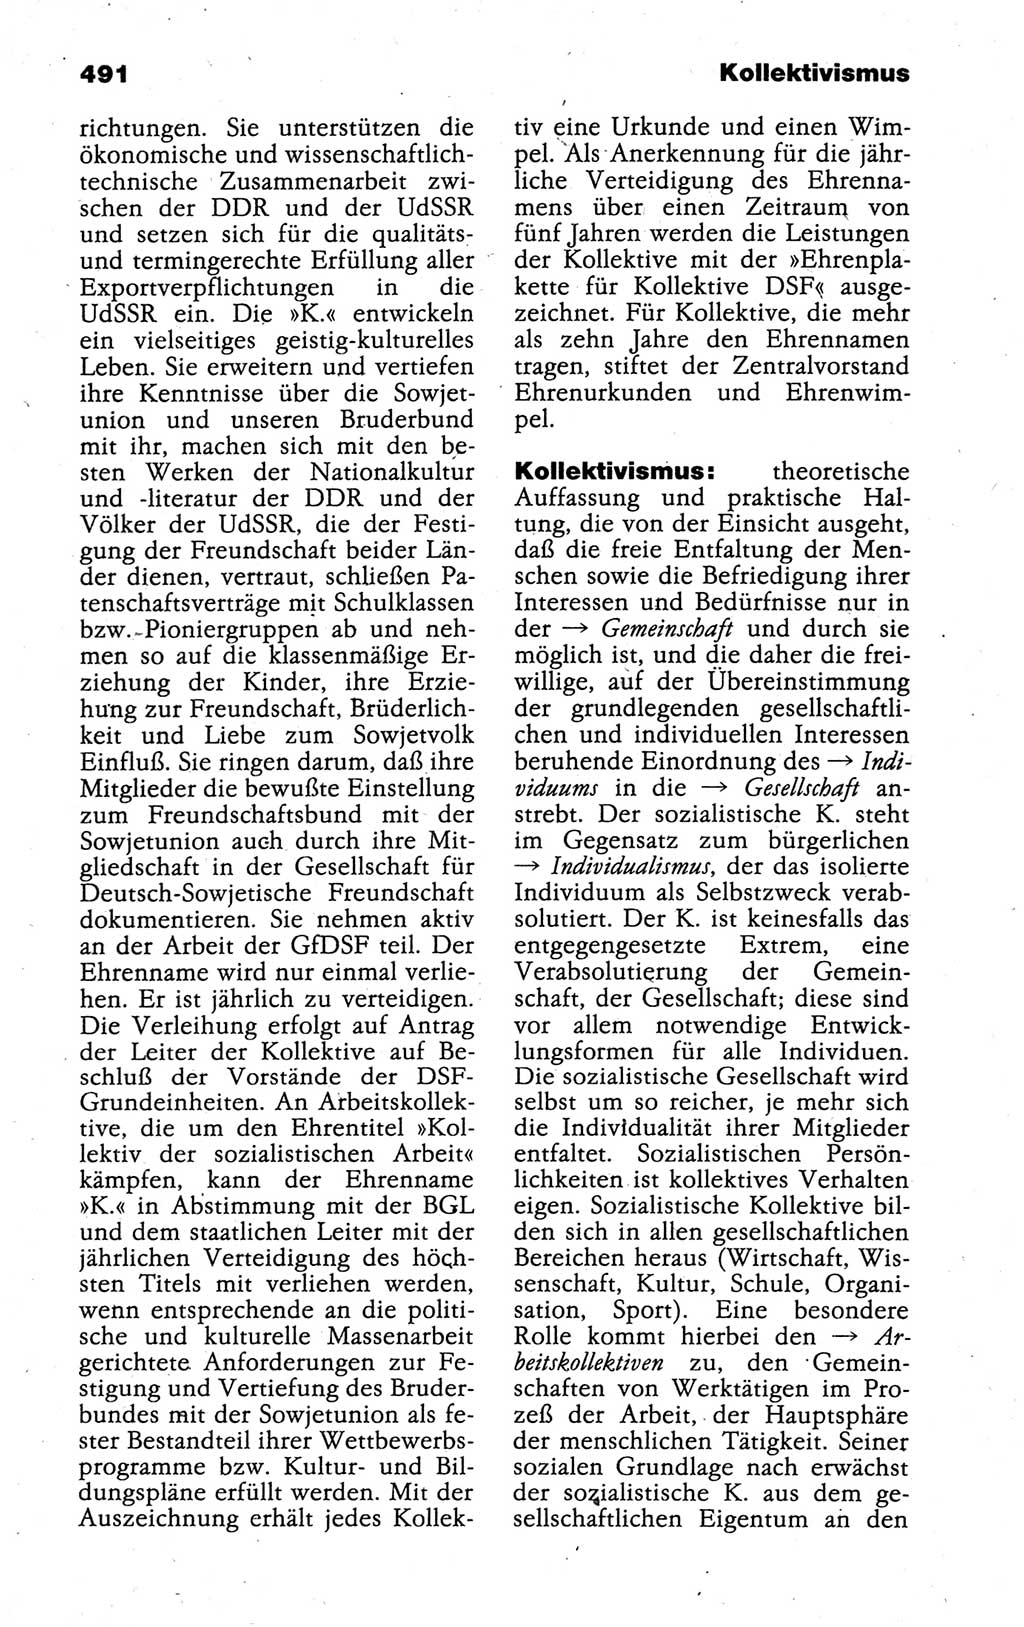 Kleines politisches Wörterbuch [Deutsche Demokratische Republik (DDR)] 1988, Seite 491 (Kl. pol. Wb. DDR 1988, S. 491)